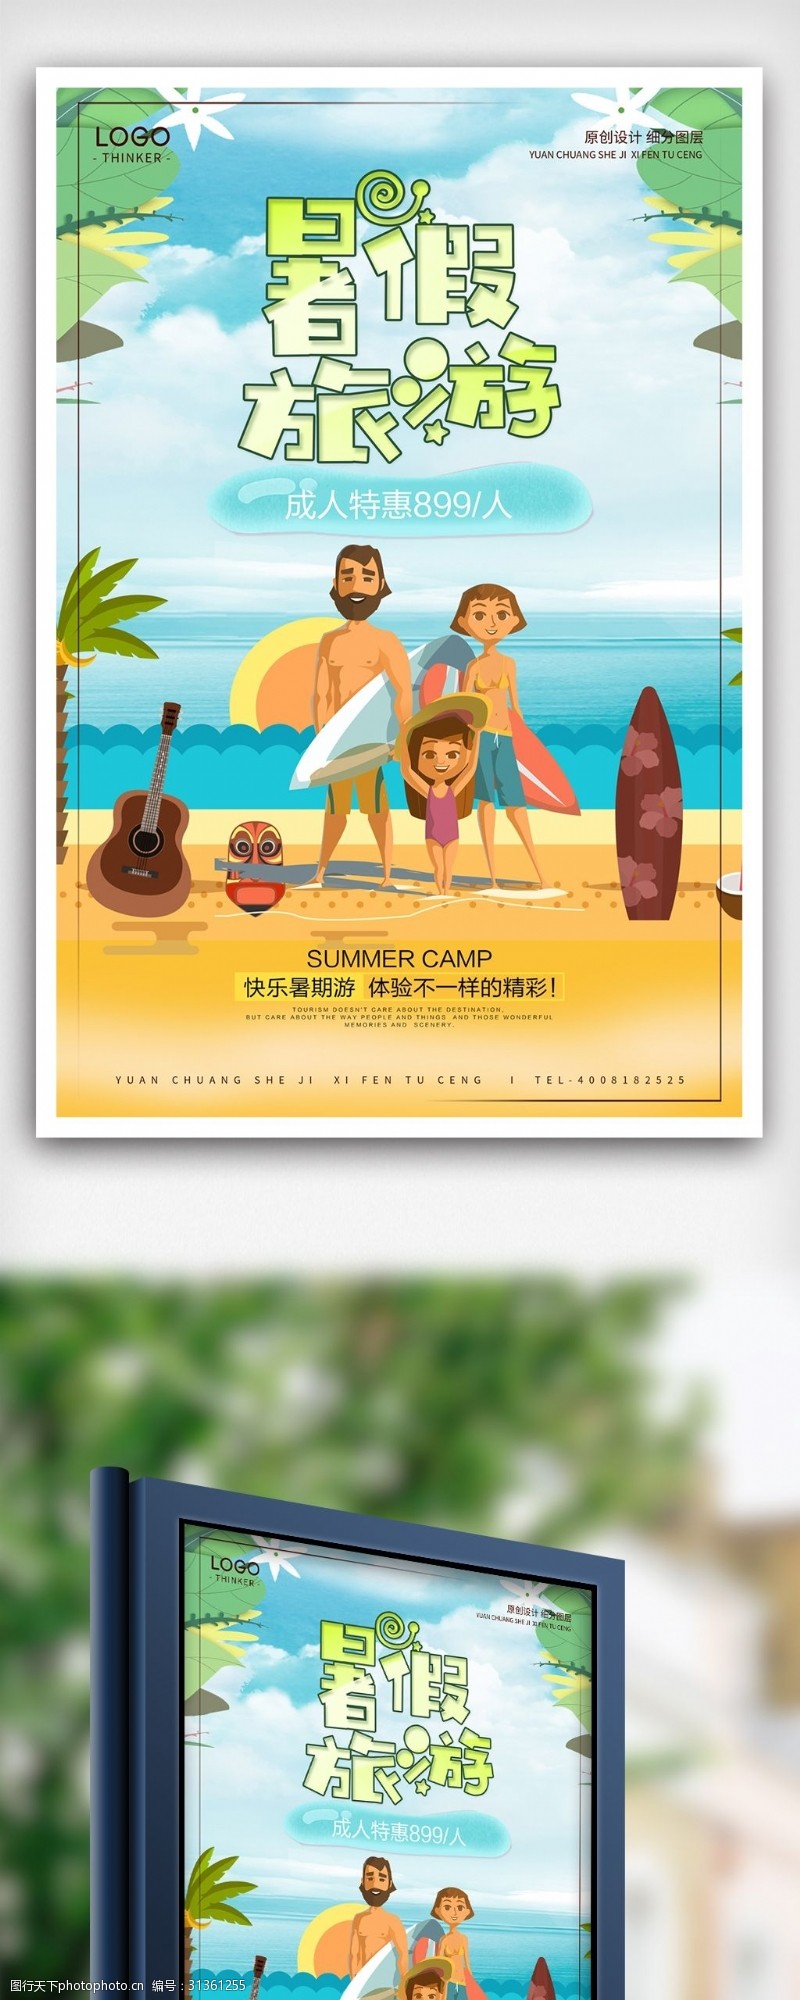 驴友旅游创意卡通暑期旅游宣传海报设计